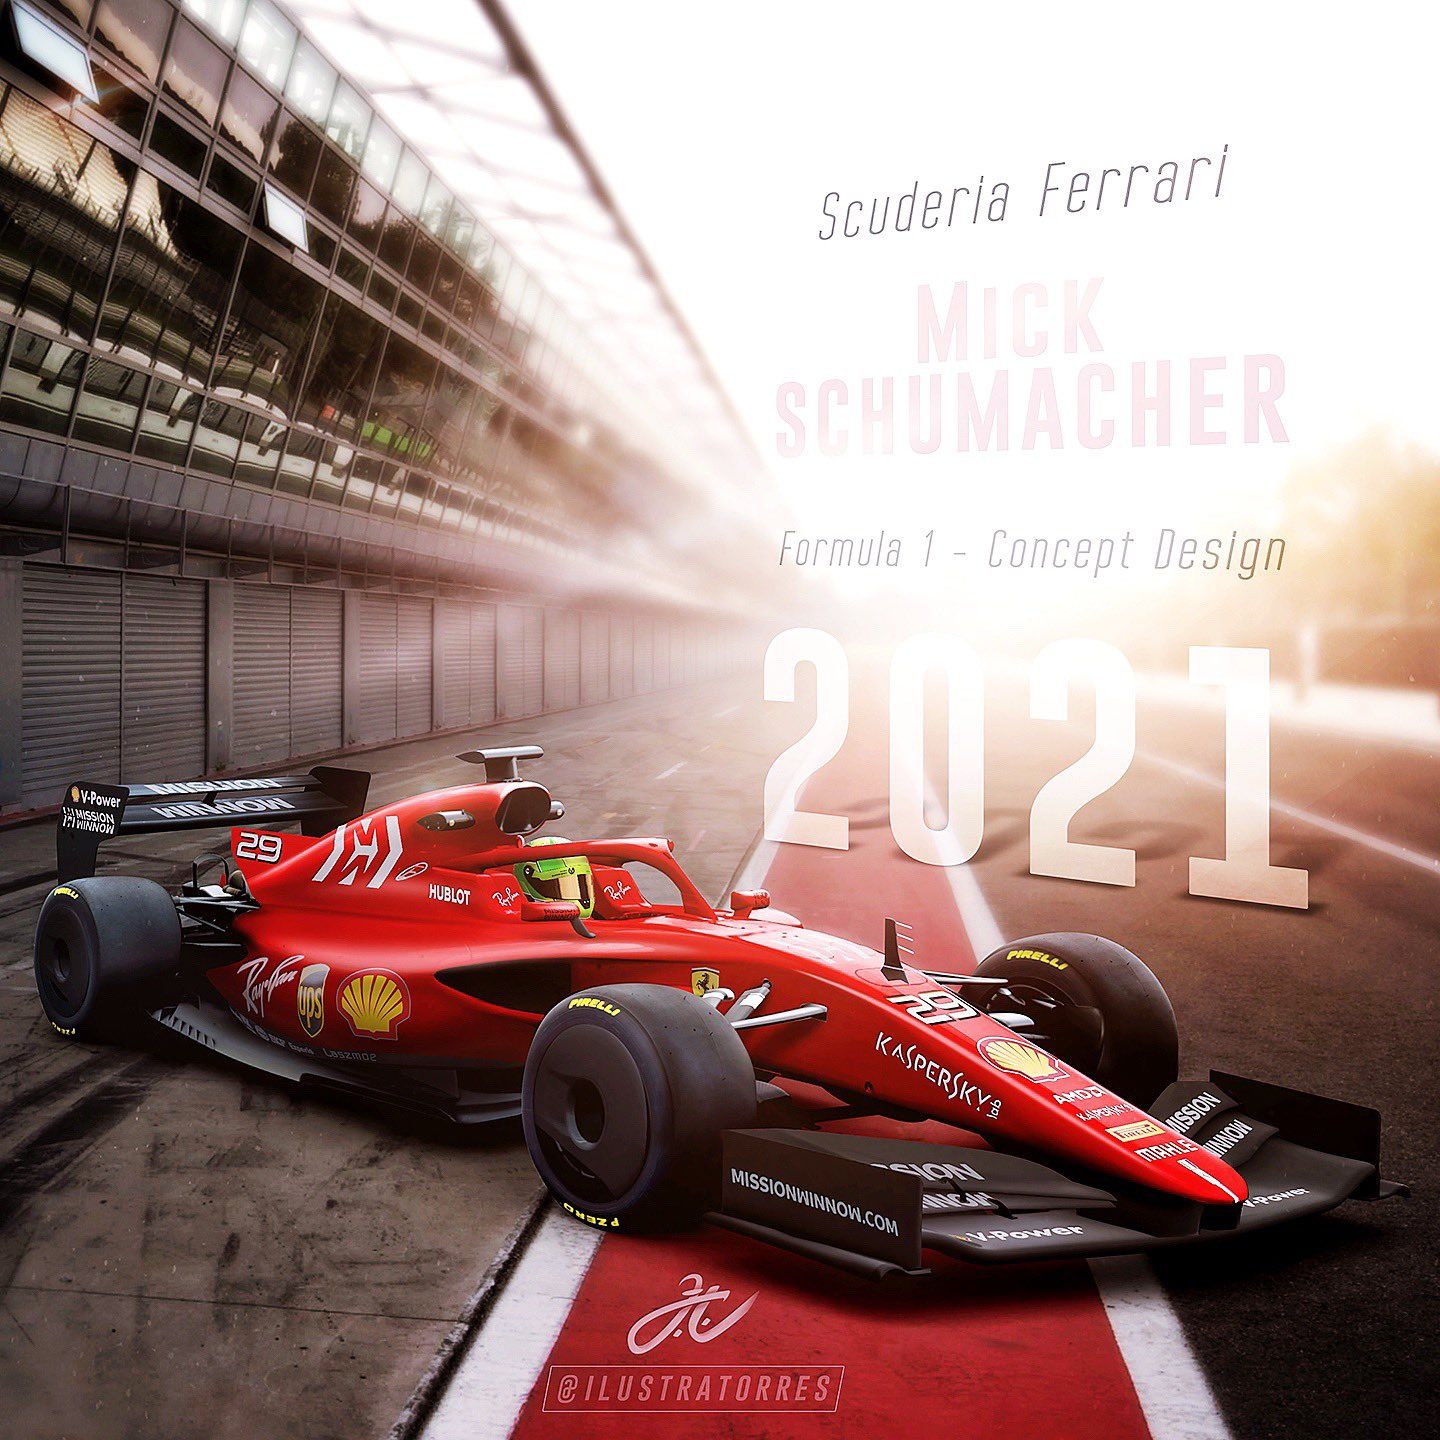 F1 Concept Ferrari Racing